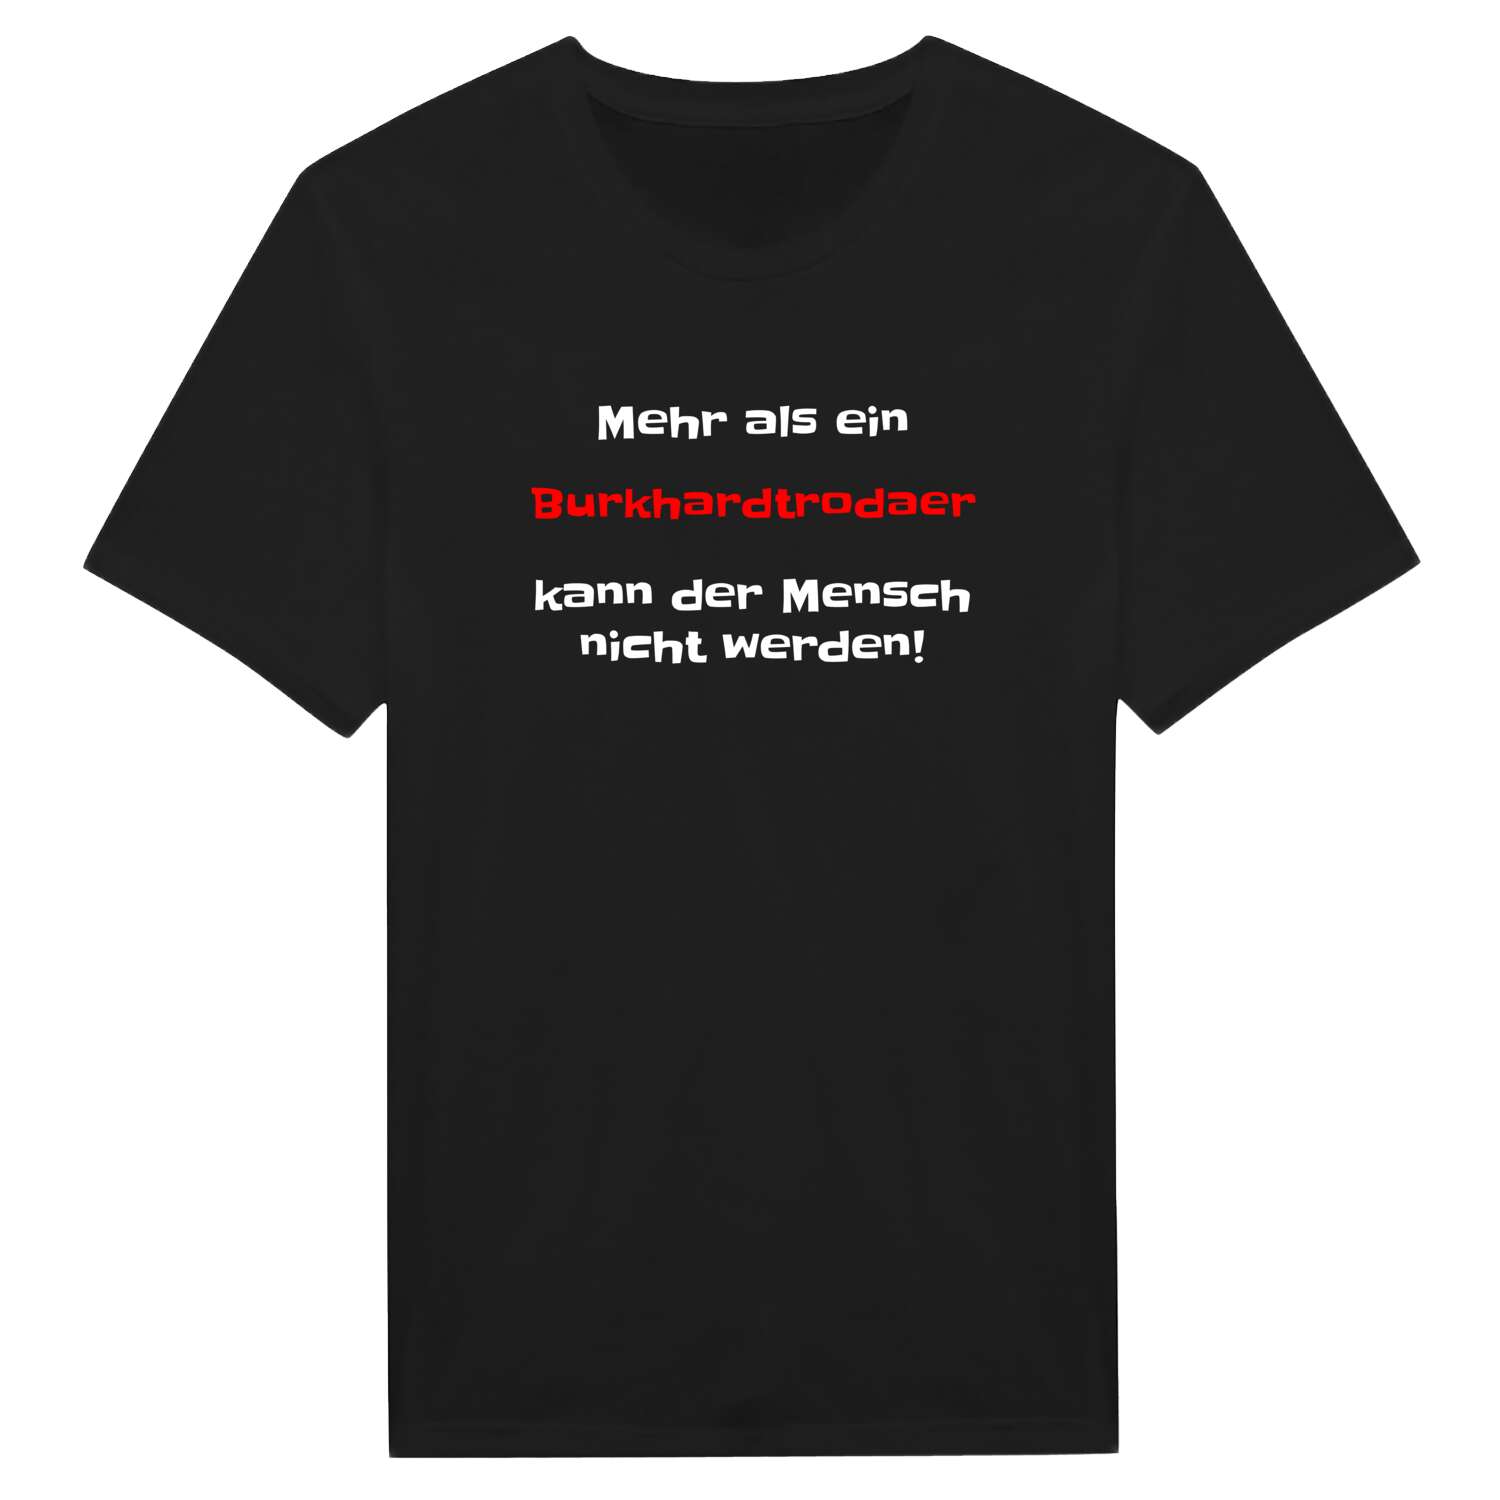 Burkhardtroda T-Shirt »Mehr als ein«